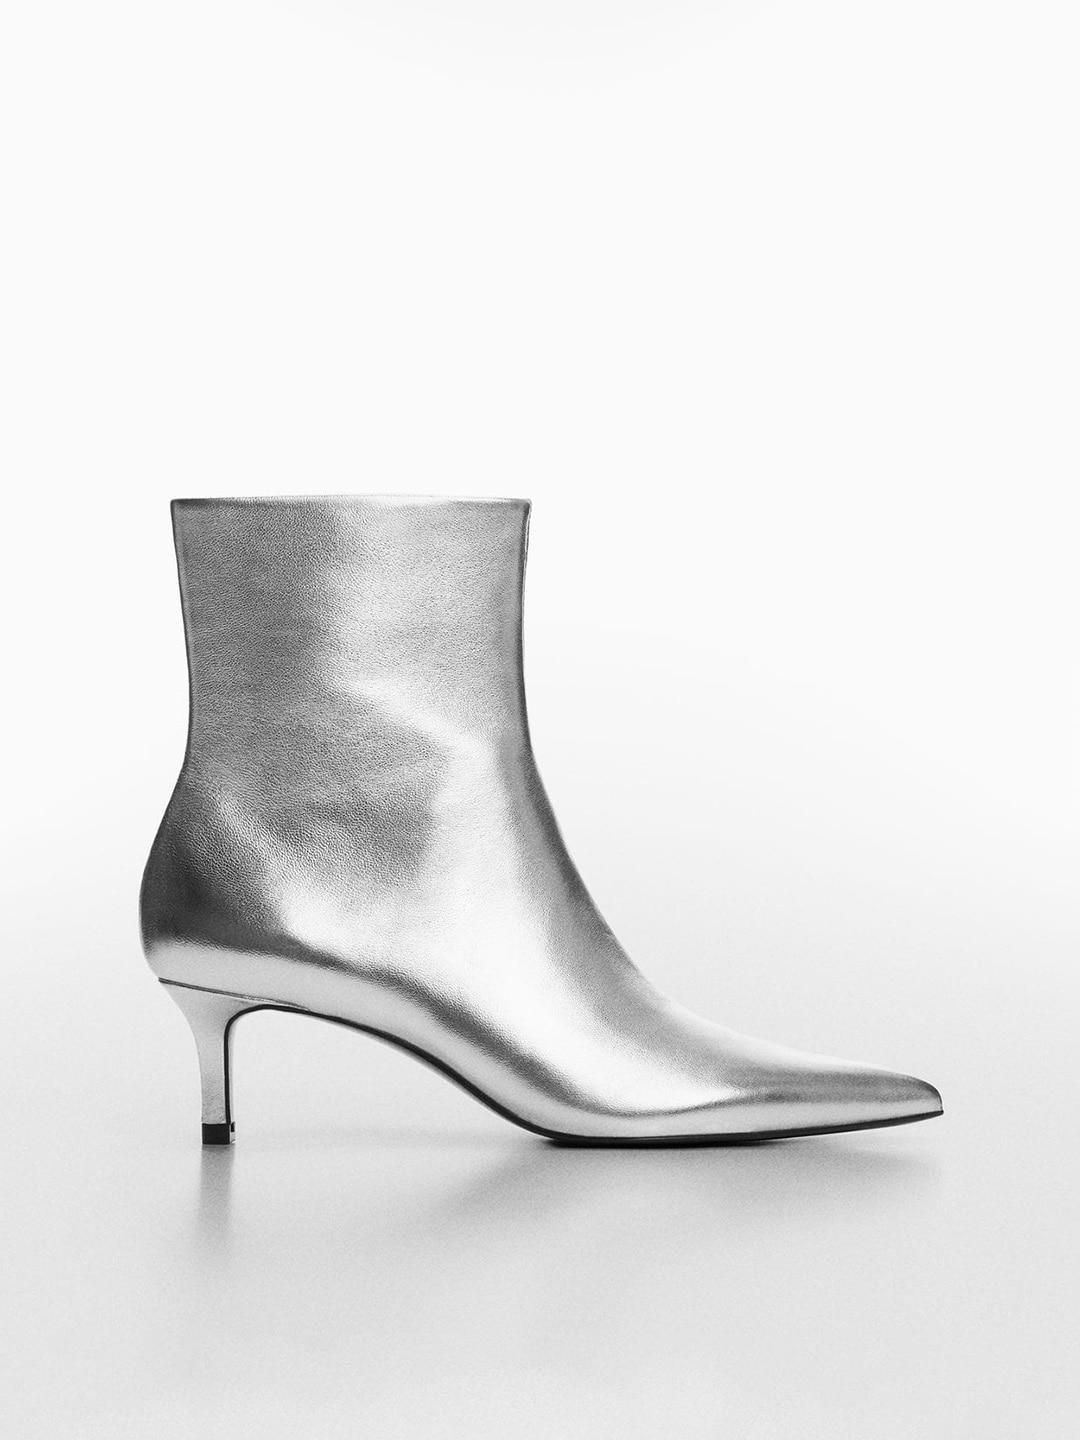 mango-women-mid-top-pointed-toe-leather-kitten-heel-boots